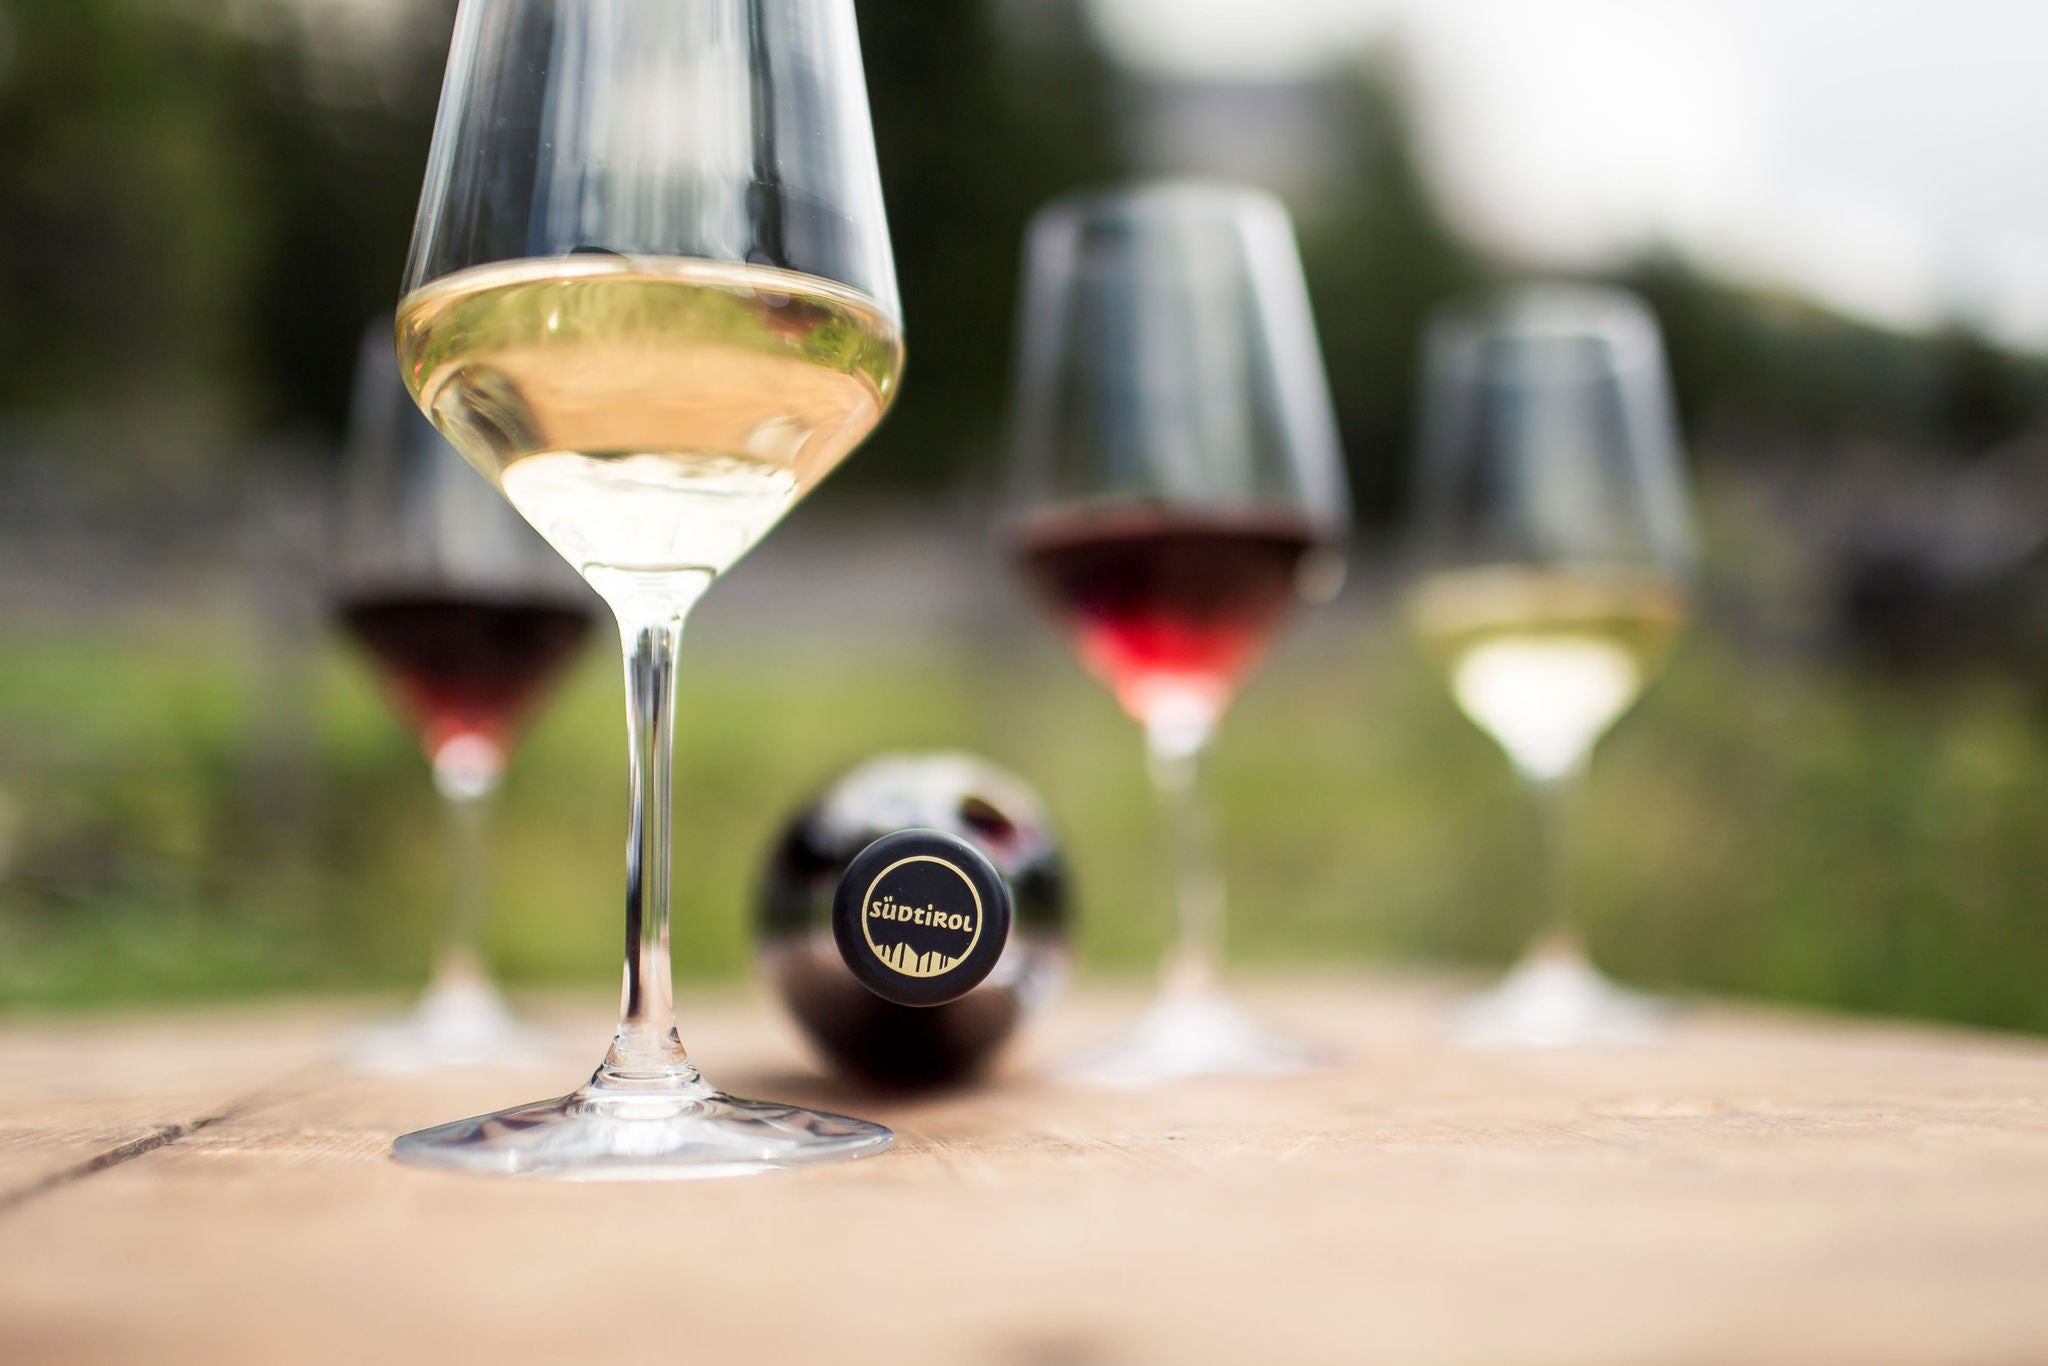 Auf einem hölzernen Untergrund stehen 4 Weingläser, ein Weinglas mit Weißwein im Vordergrund, ein weiteres und zwei Rotweingläser unscharf im Hintergrund. Zwischen den Gläsern liegt eine Weinflasche mit der Südtirol Kapsel.